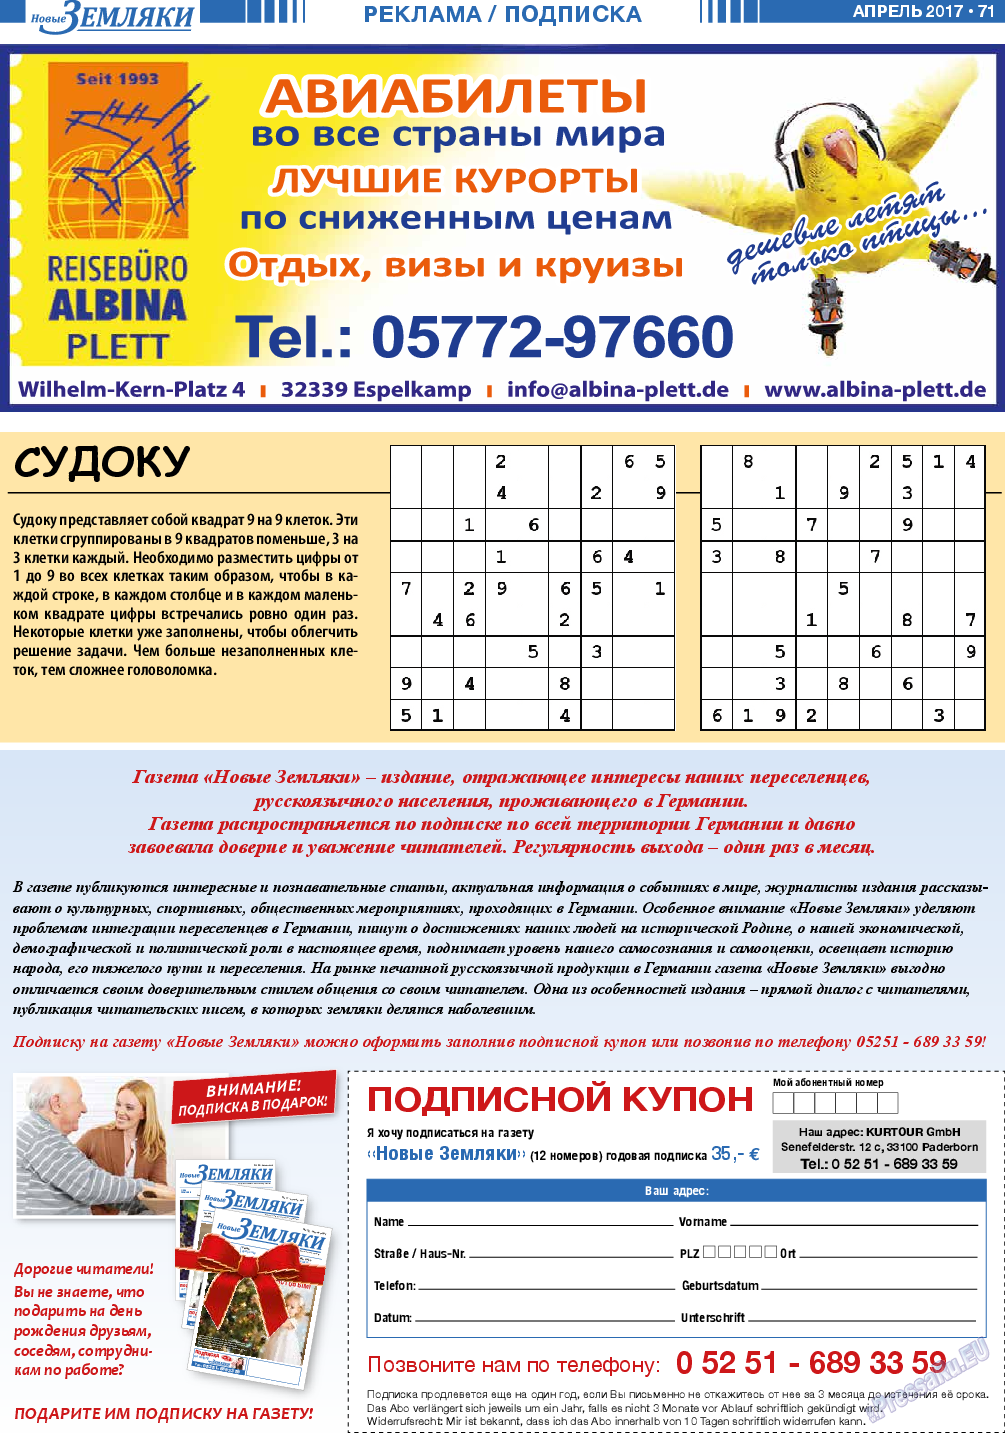 Новые Земляки, газета. 2017 №4 стр.71